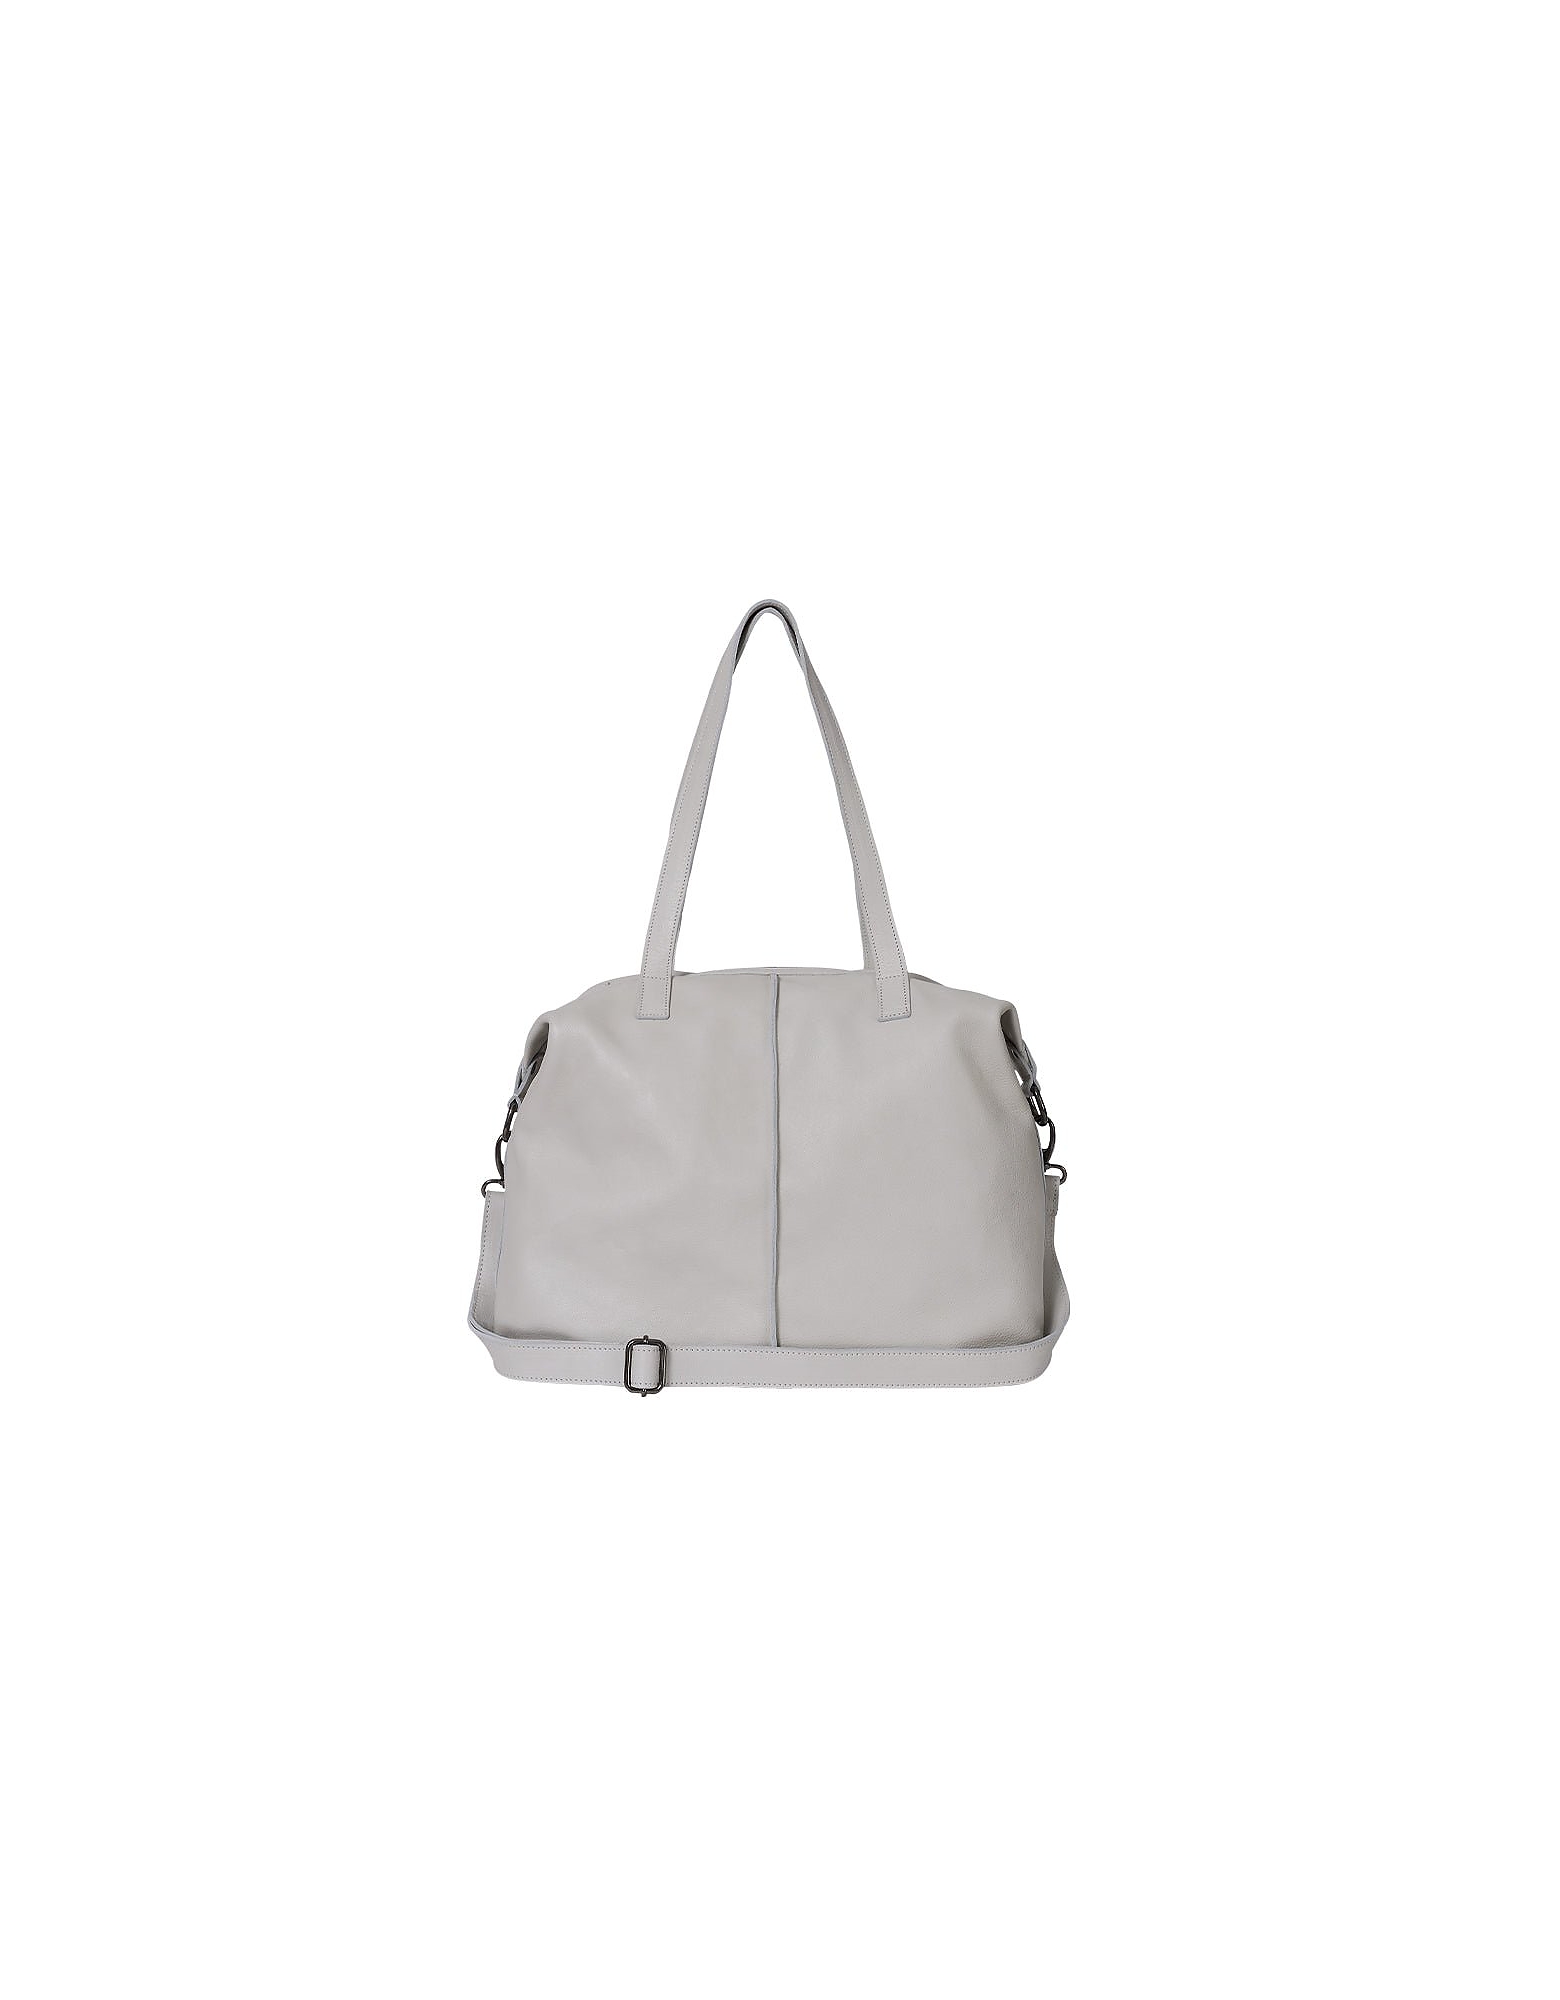 Brussosa Designer Handbags Karol Bag - Shoulder Bag In Blanc